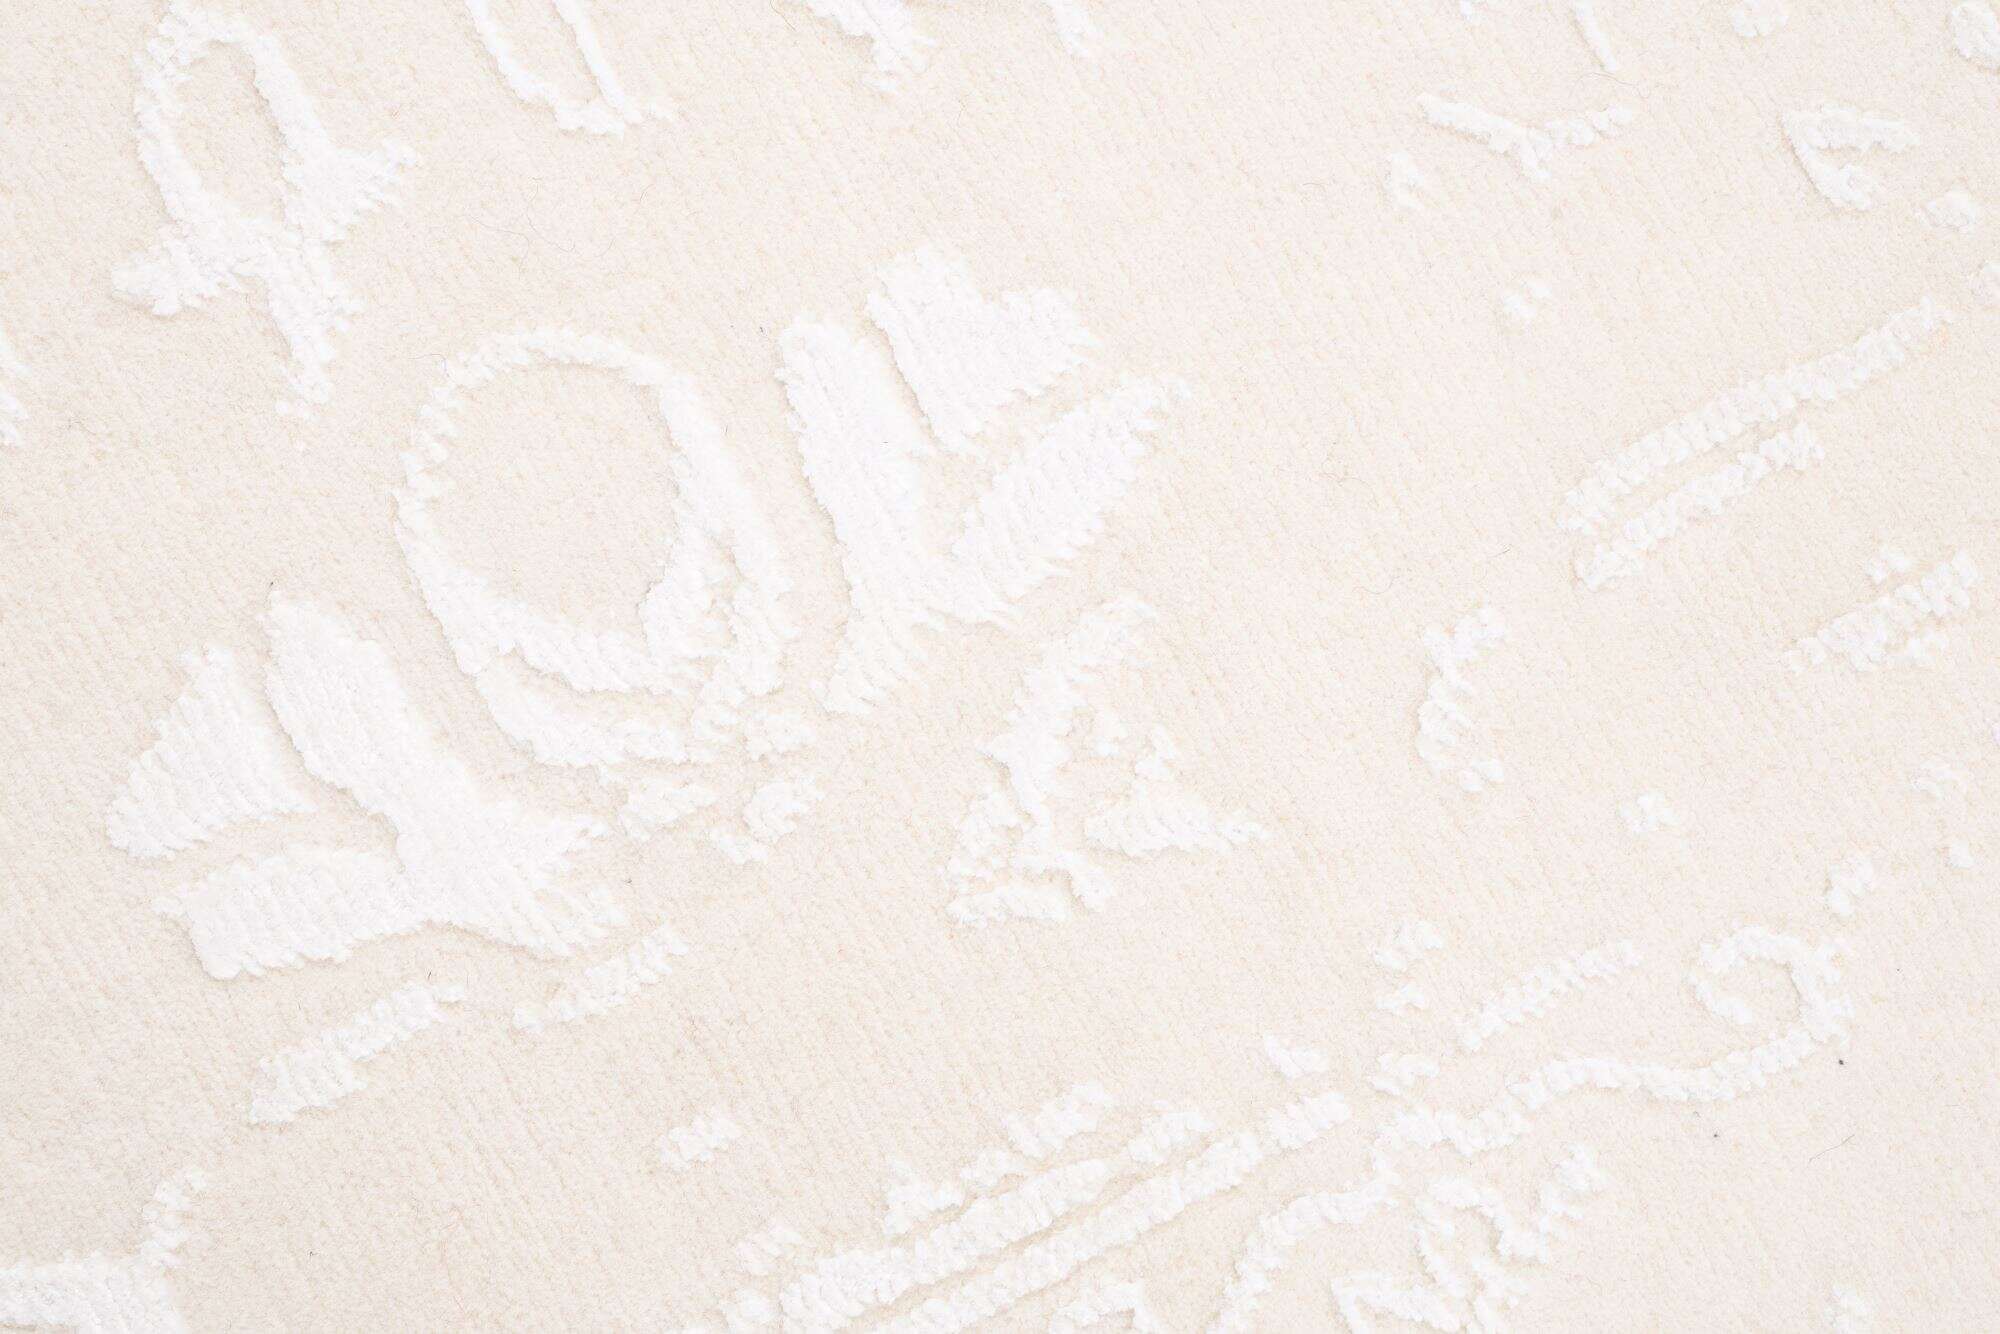 Vintage Teppich Zeeland Modern Handgeknüpft Wolle Viskose beige 160x230 cm